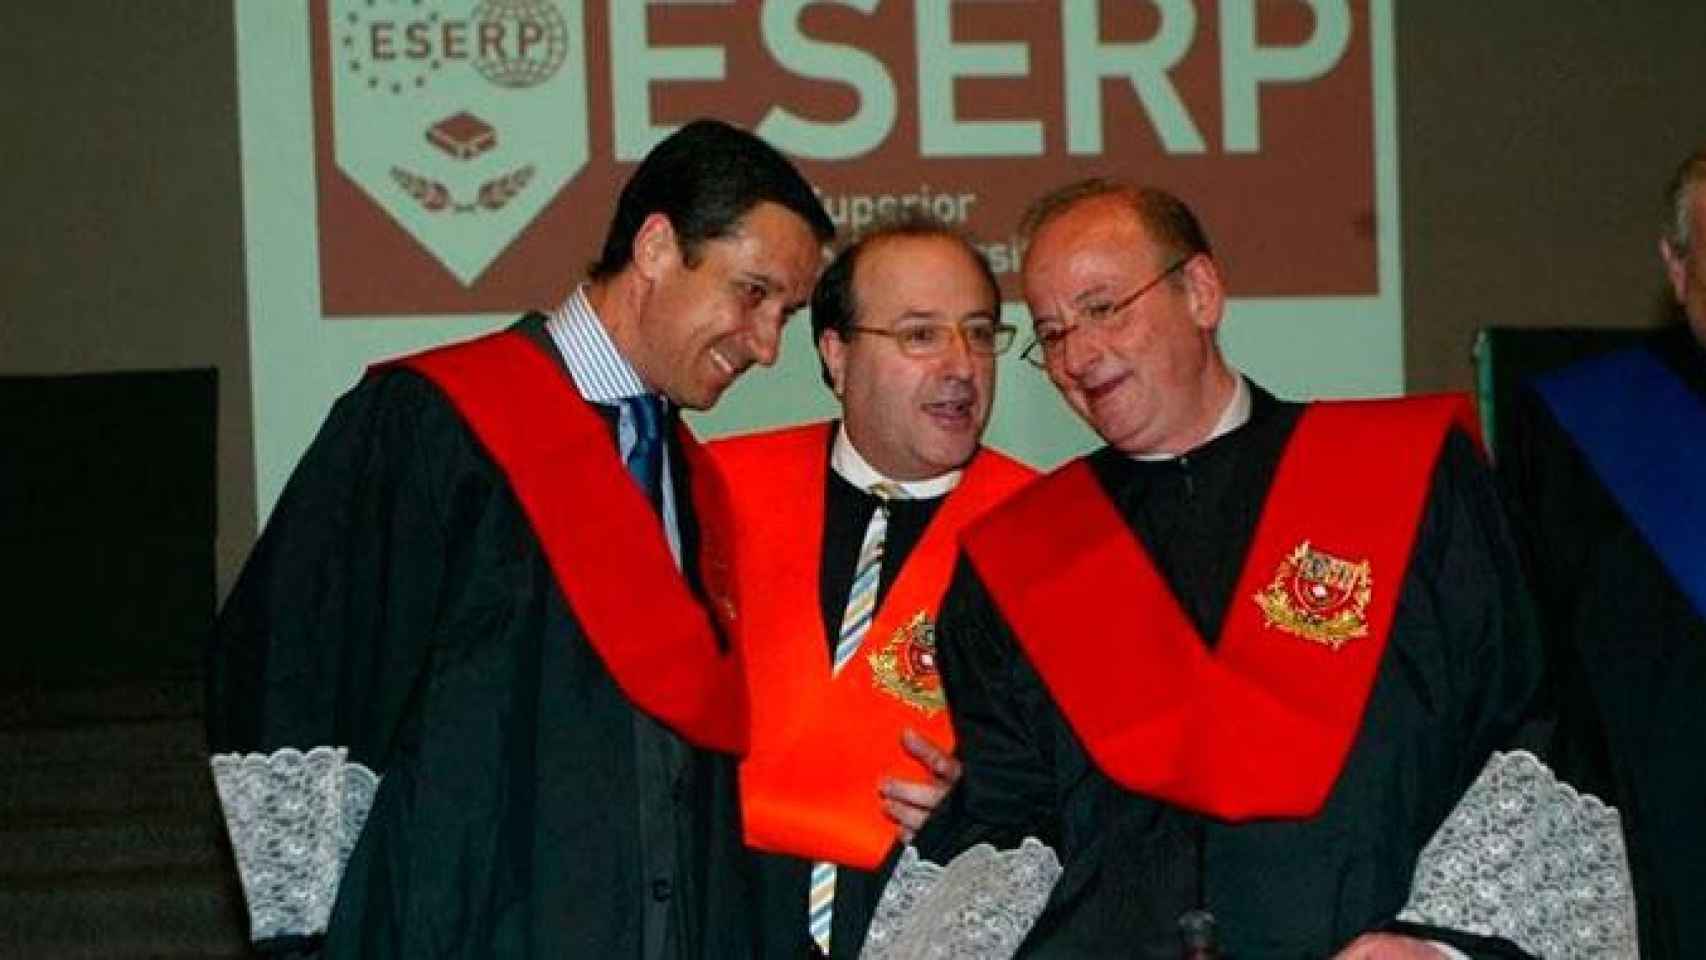 La foto que algunos querrían eliminar: Eduardo Zaplana, José Antich y Jordi Vilajoana